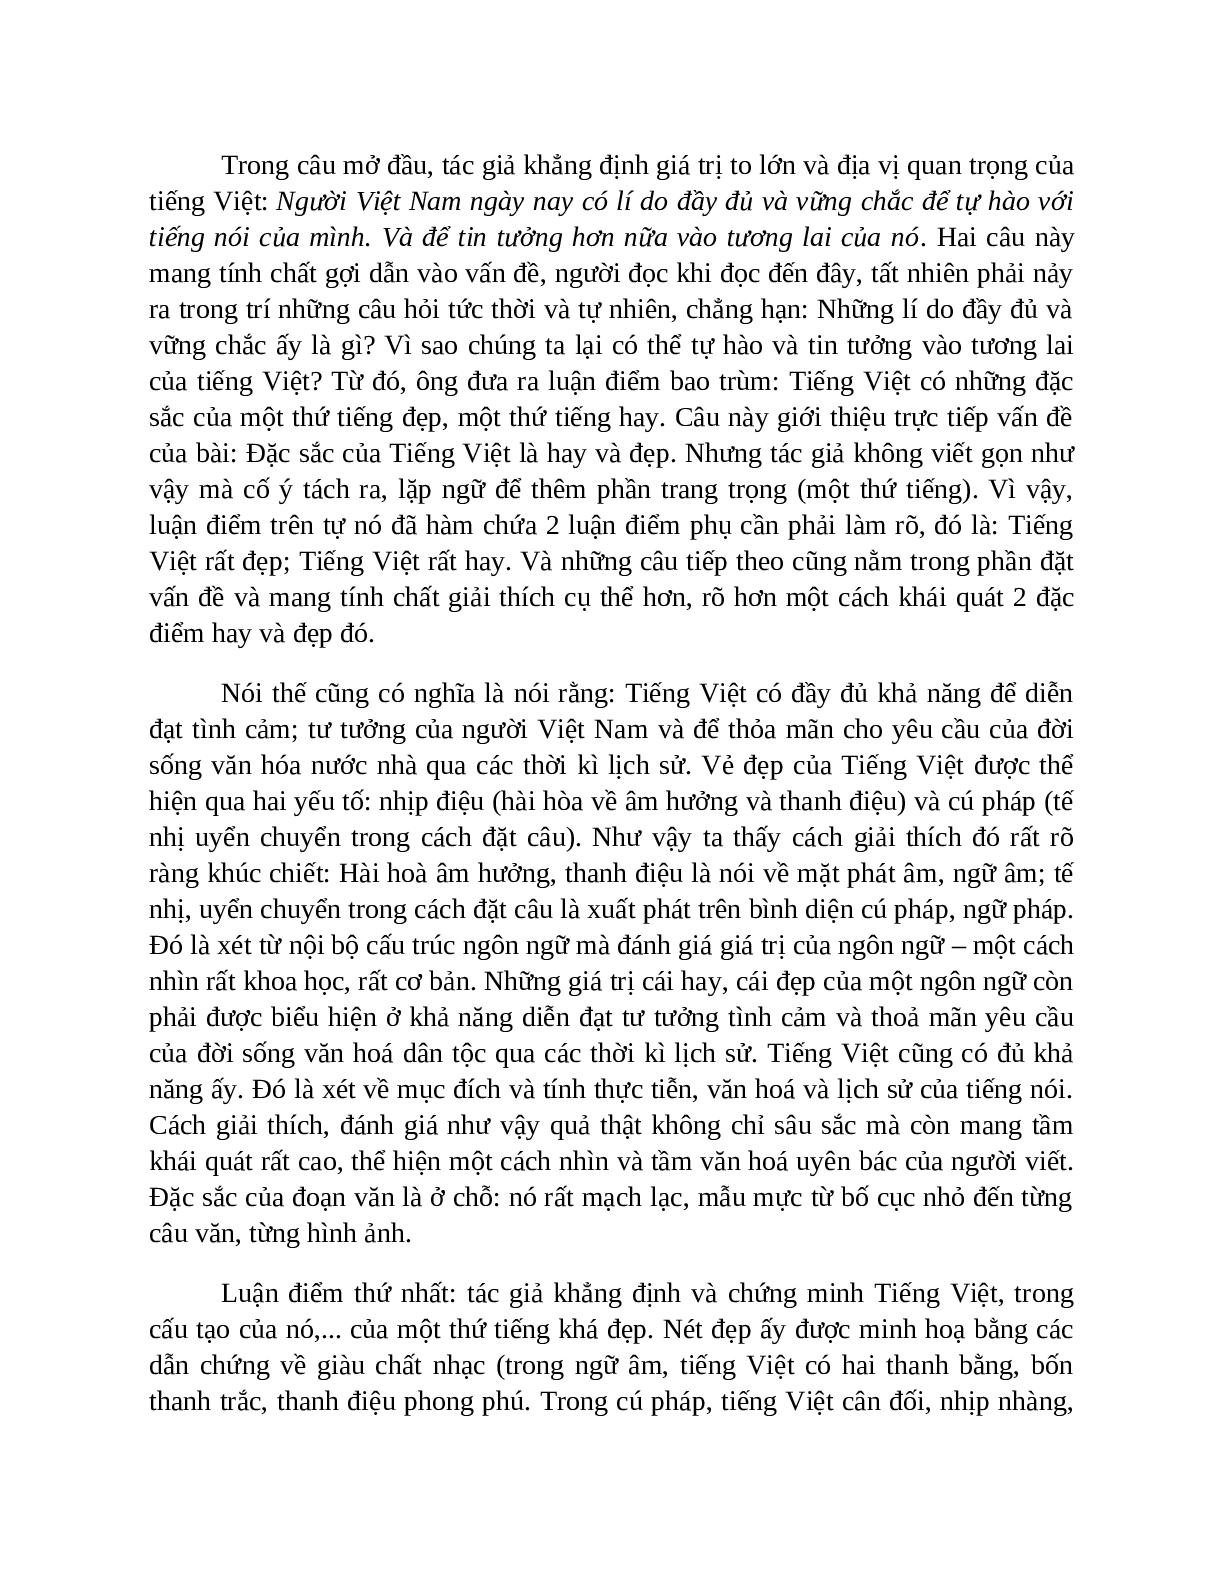 Sơ đồ tư duy bài Sự giàu đẹp của Tiếng Việt dễ nhớ, ngắn nhất - Ngữ văn lớp 7 (trang 5)